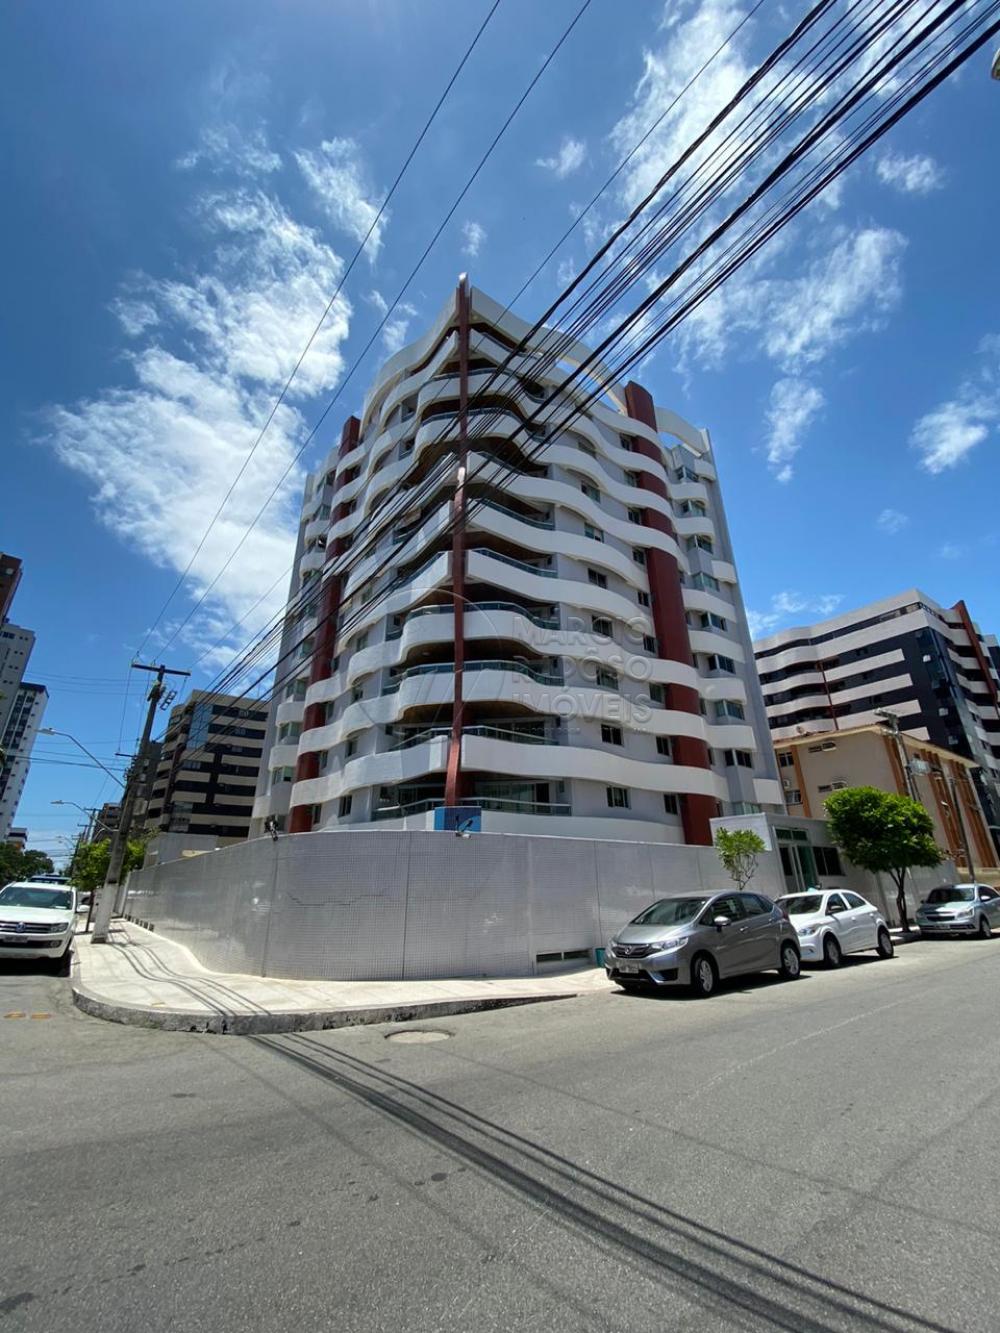 Maceio Ponta Verde Apartamento Venda R$1.600.000,00 Condominio R$1.600,00 4 Dormitorios 4 Vagas 